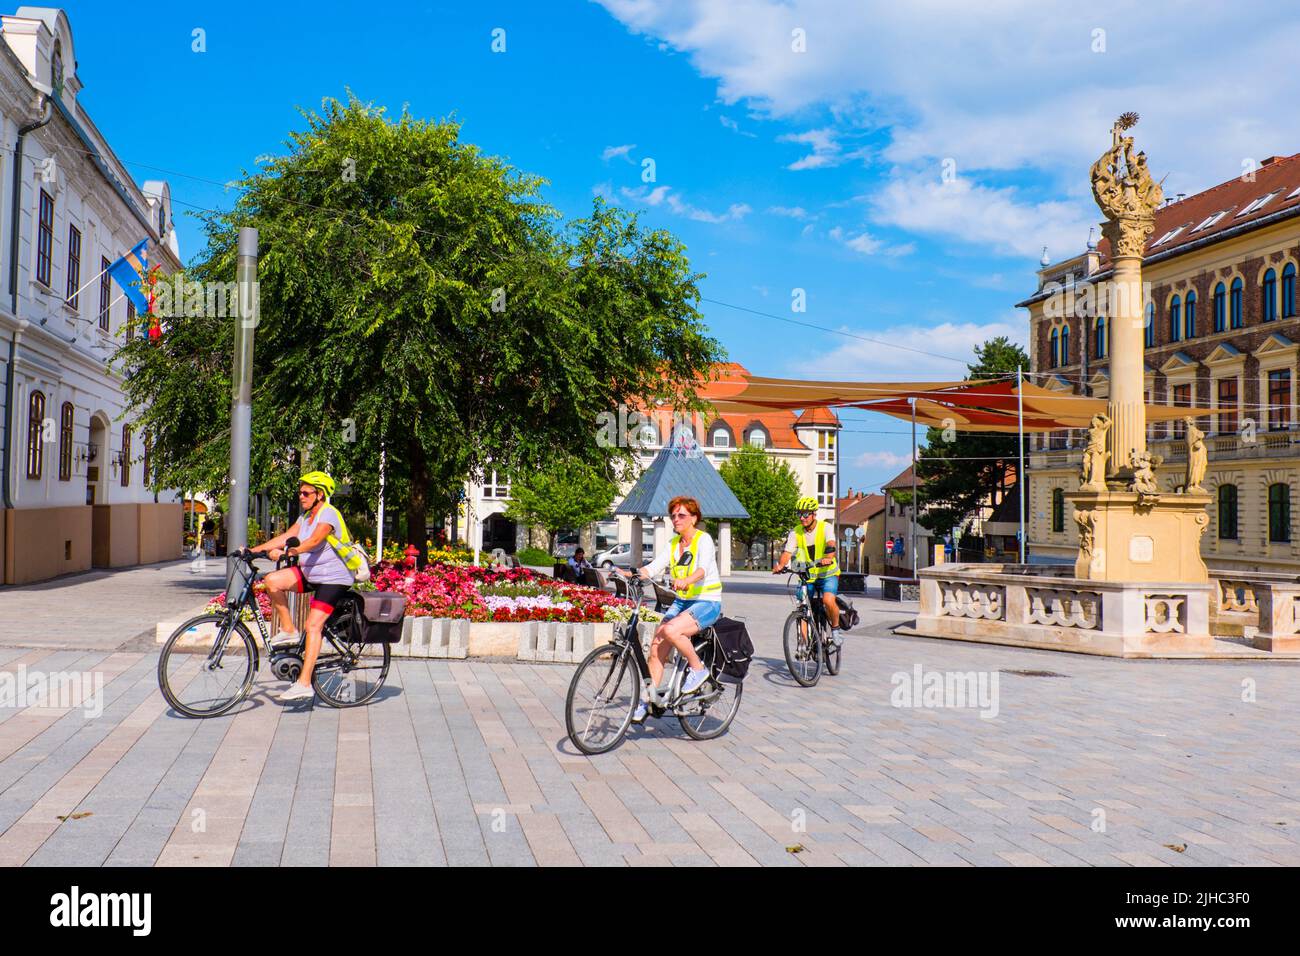 Cyclists, Fö ter, main square, Keszthely, Hungary Stock Photo